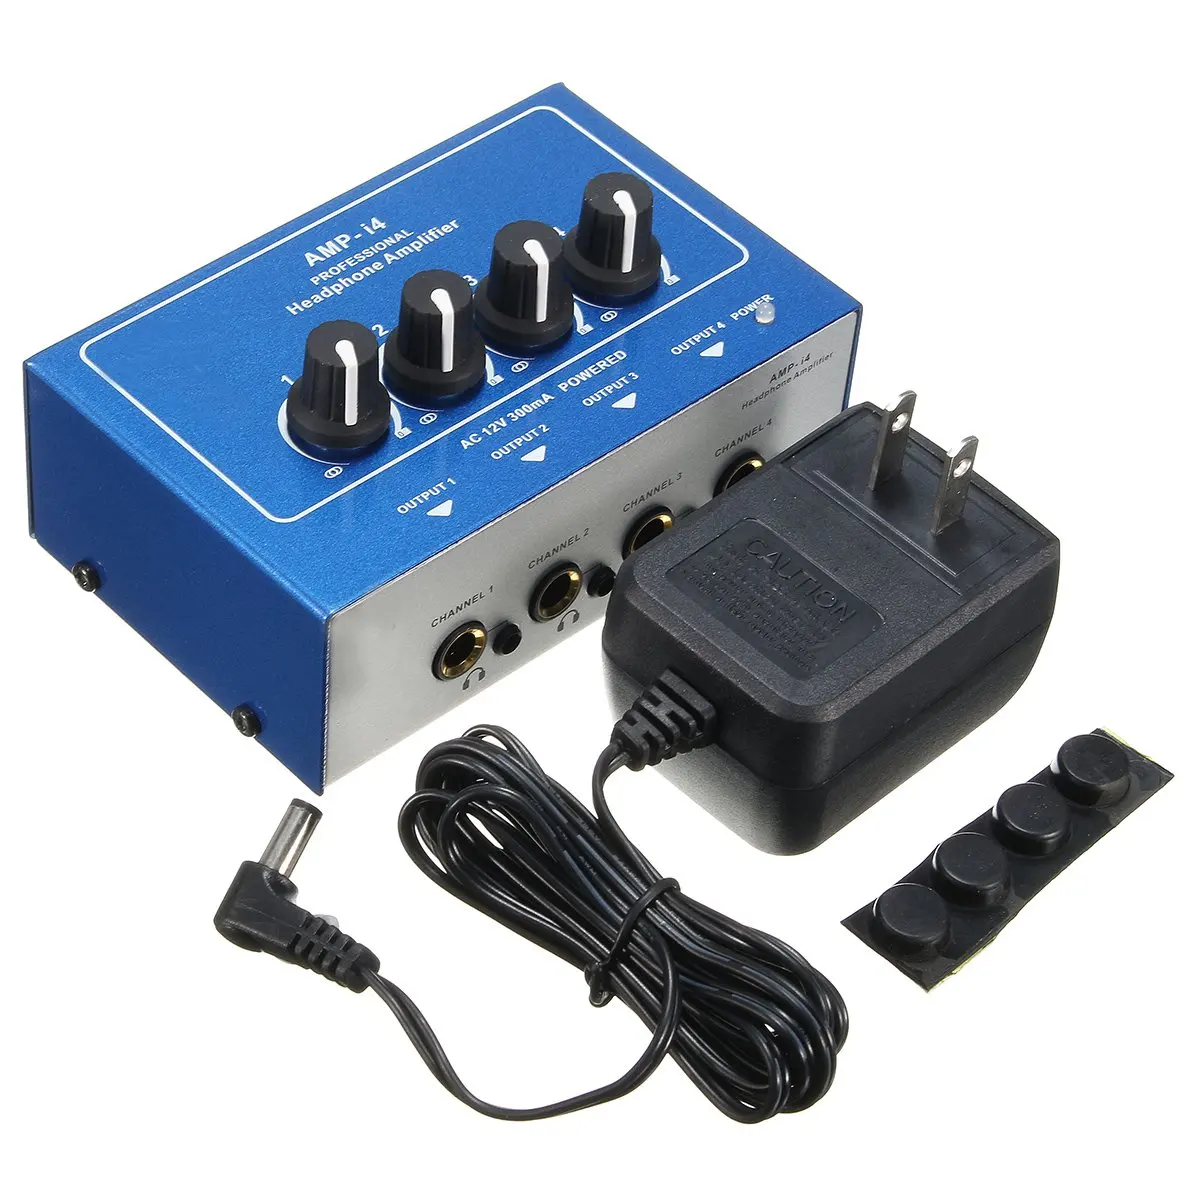 

Mini 4 каналов усилитель для наушников AMP-i4 профессиональное ультра-компактные наушники аудио стерео усилитель микшер с адаптером питания